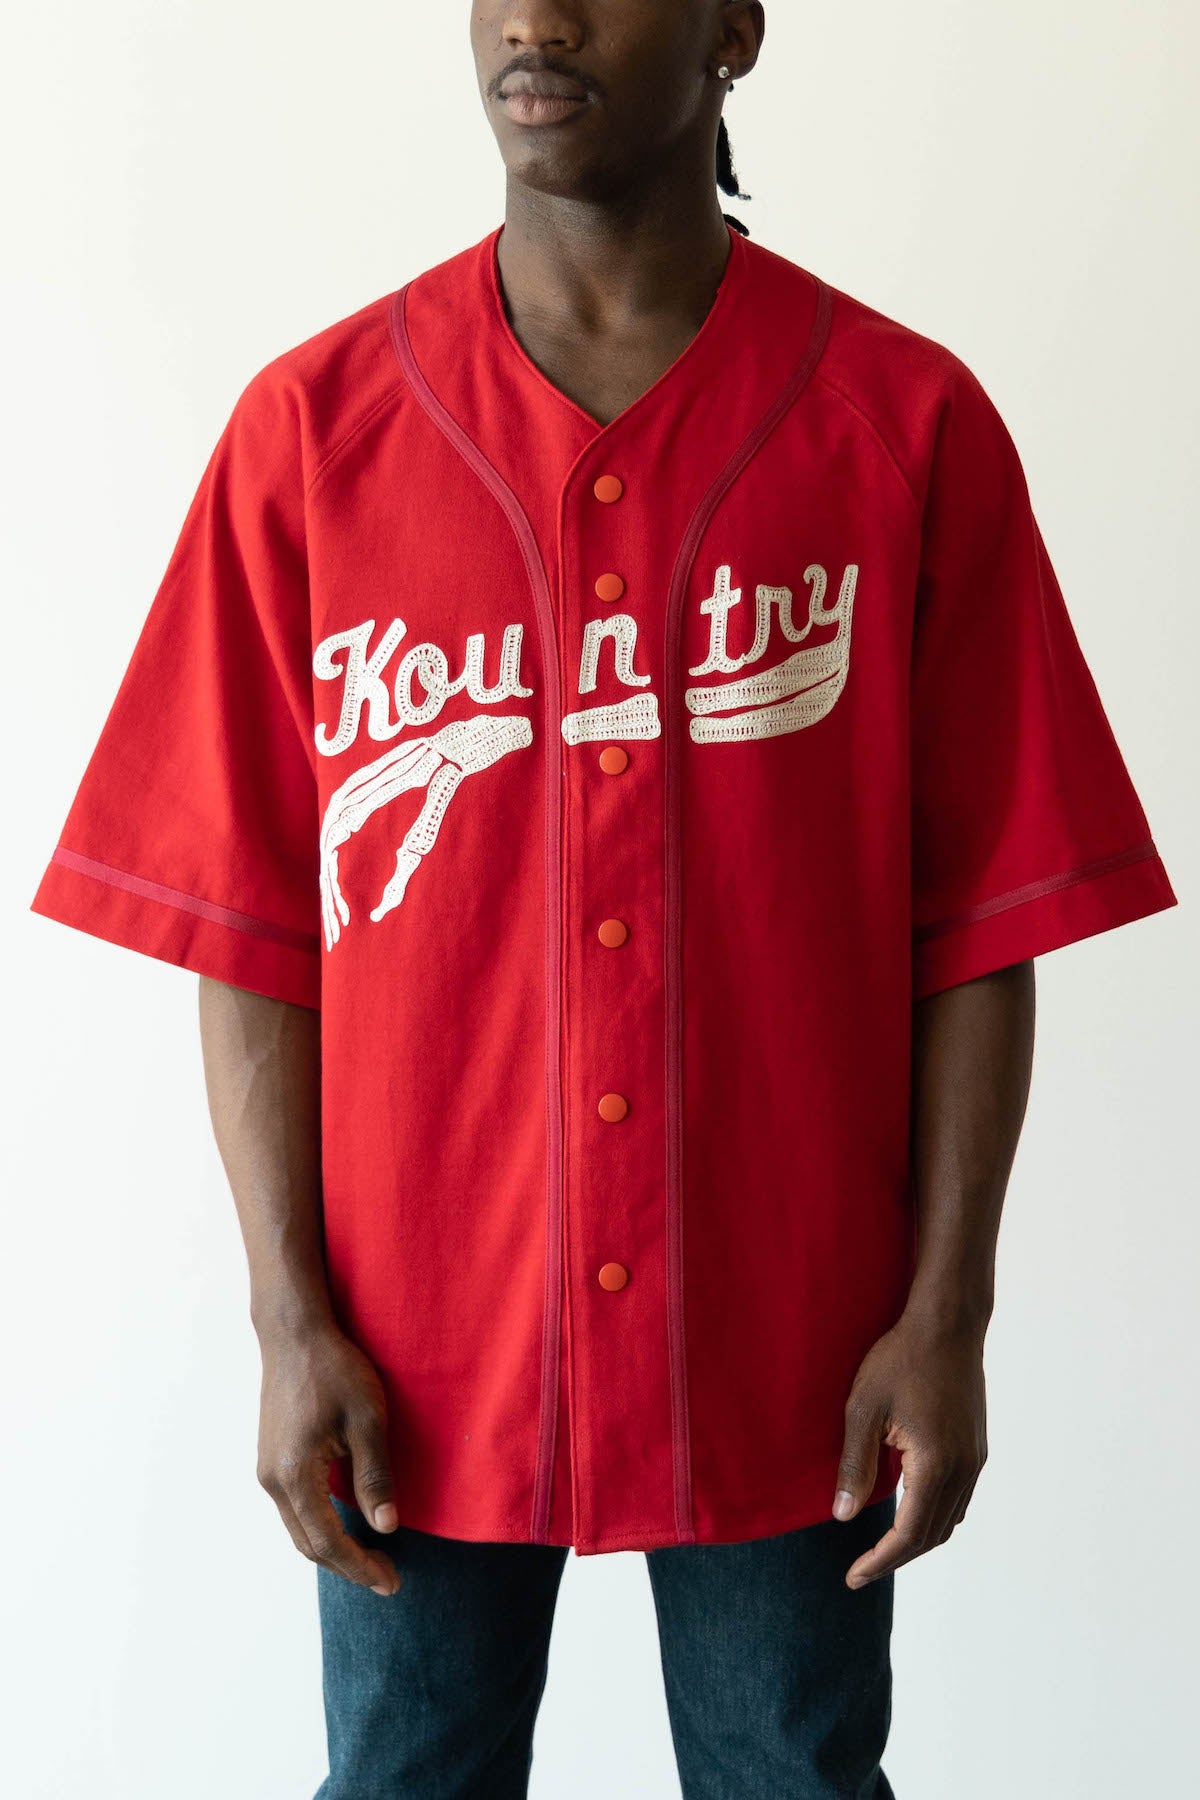 baseball red jersey